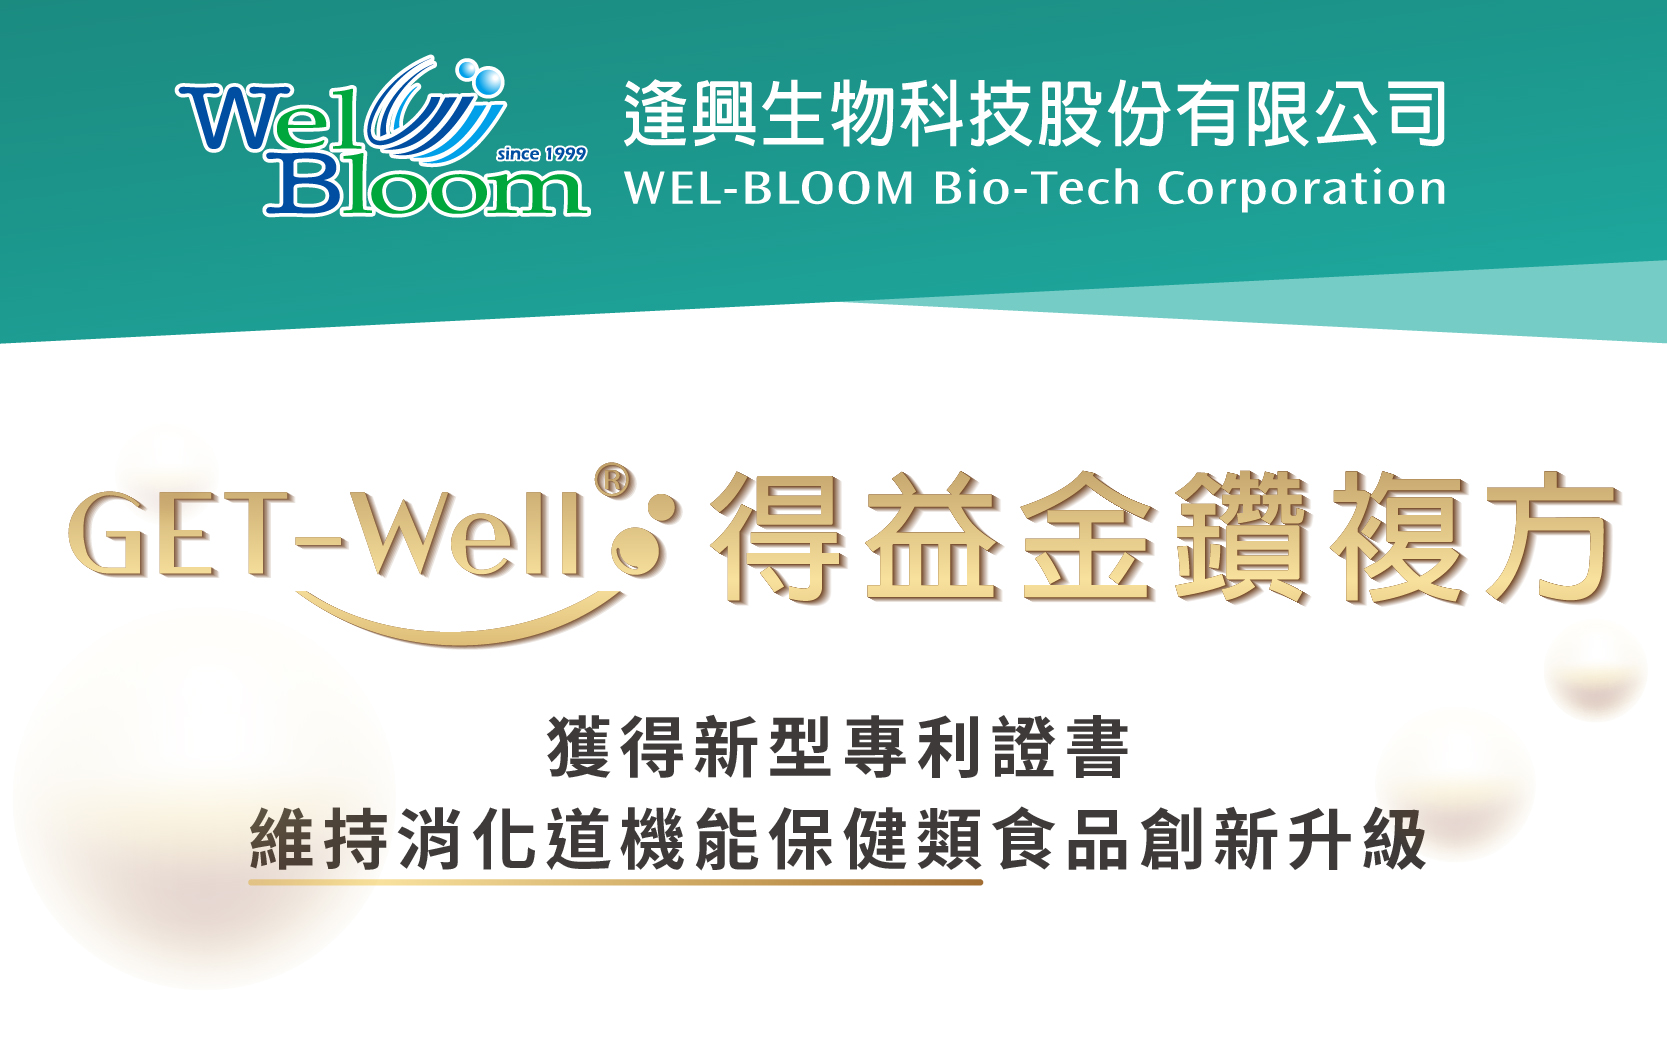 逢兴生技金钻复方GET-Well ®得益获得专利！为维持消化道机能保健类食品创新升级！